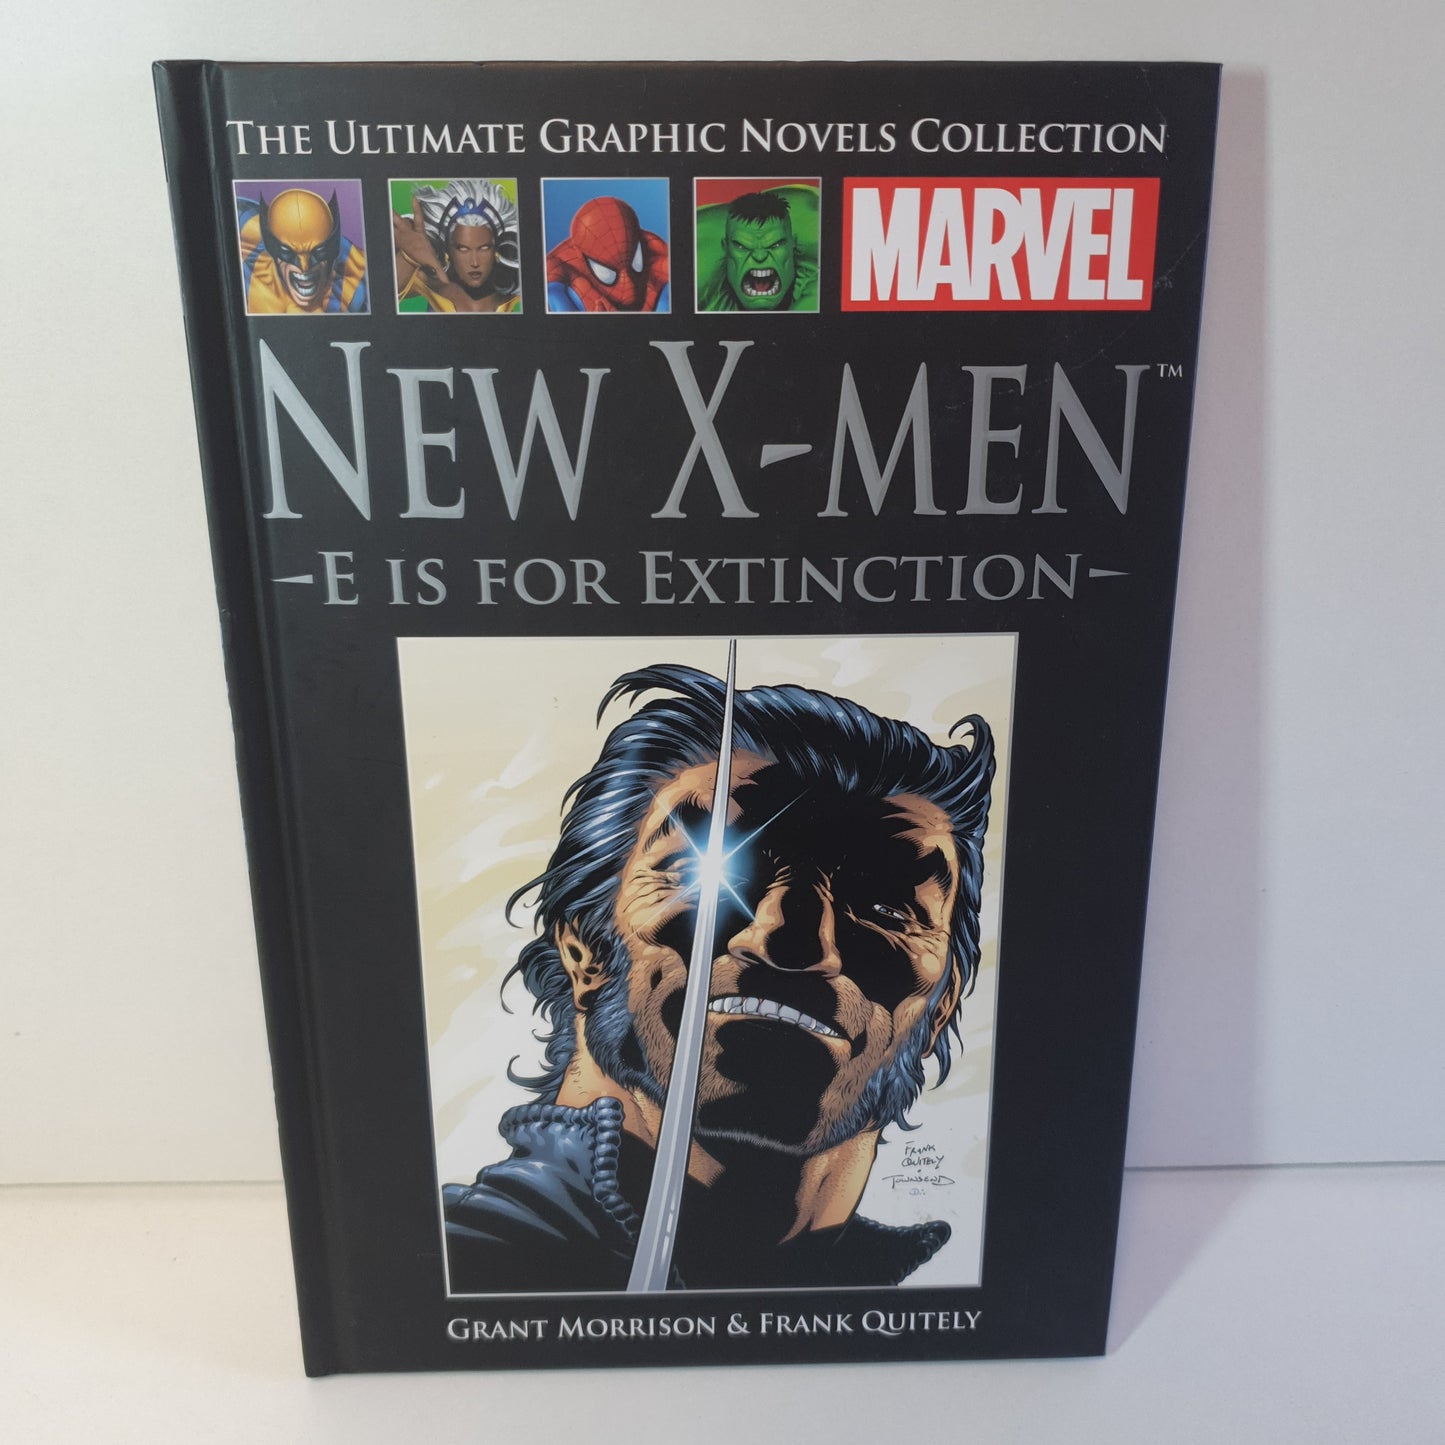 New X-Men: E is For Extinction by Grant Morrison & Frank Quitely (2012)